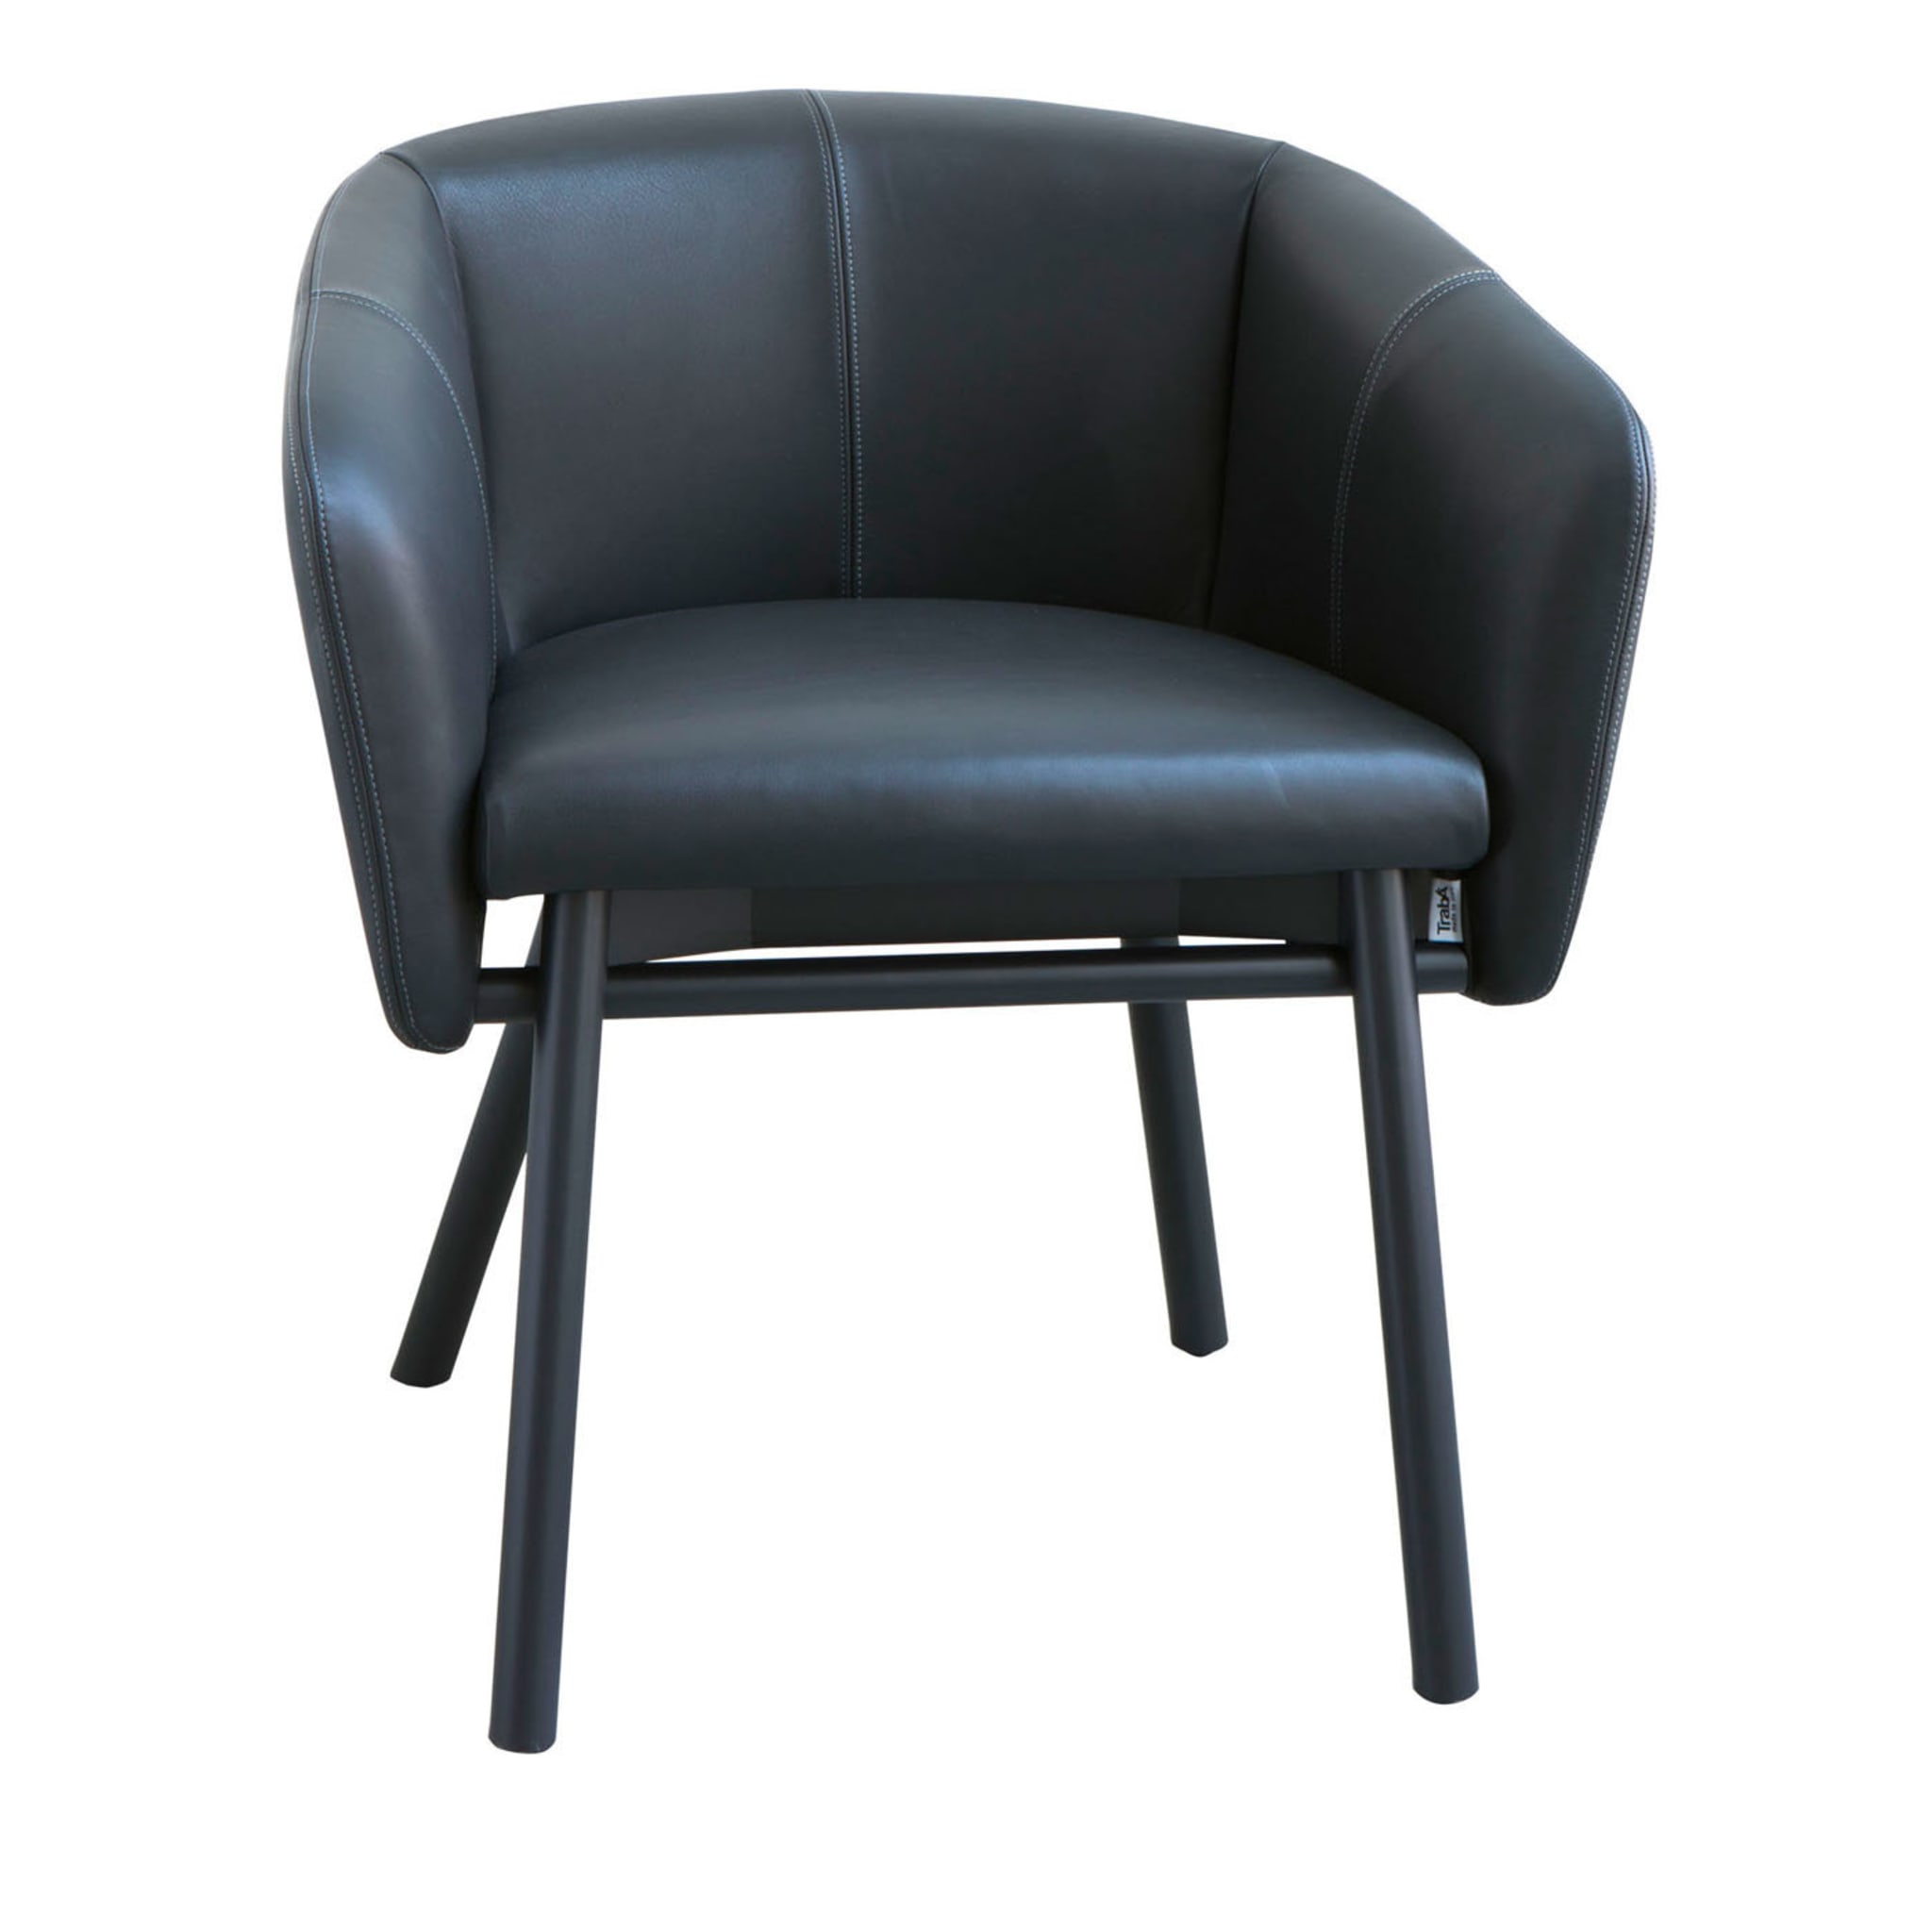 Balù Black Leather Chair By Emilio Nanni - Main view